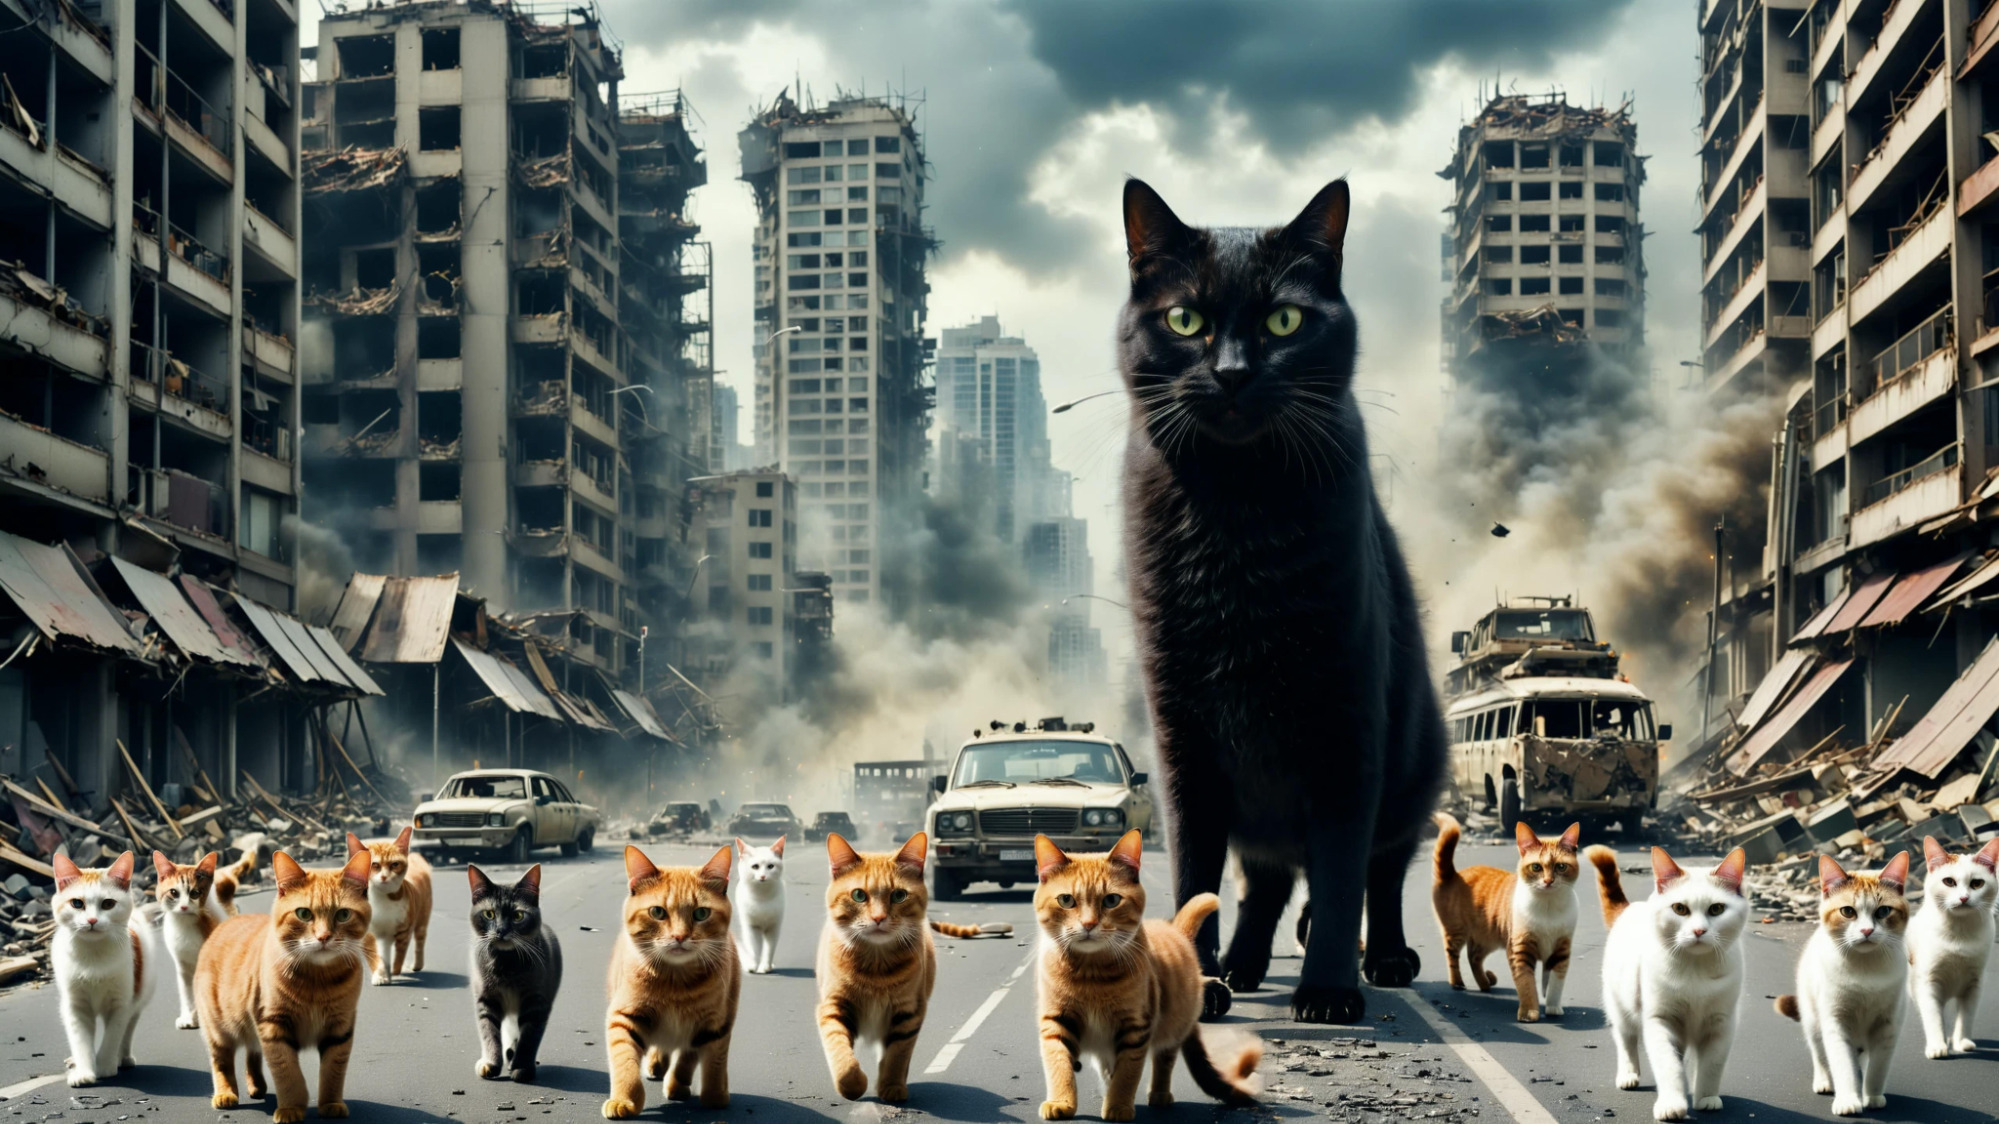 A imagem mostra um cenário pós-apocalíptico com edifícios destruídos e fumaça no ar. Uma grande quantidade de gatos, incluindo um gato preto gigante, anda por uma rua deserta, sugerindo um mundo dominado por felinos.